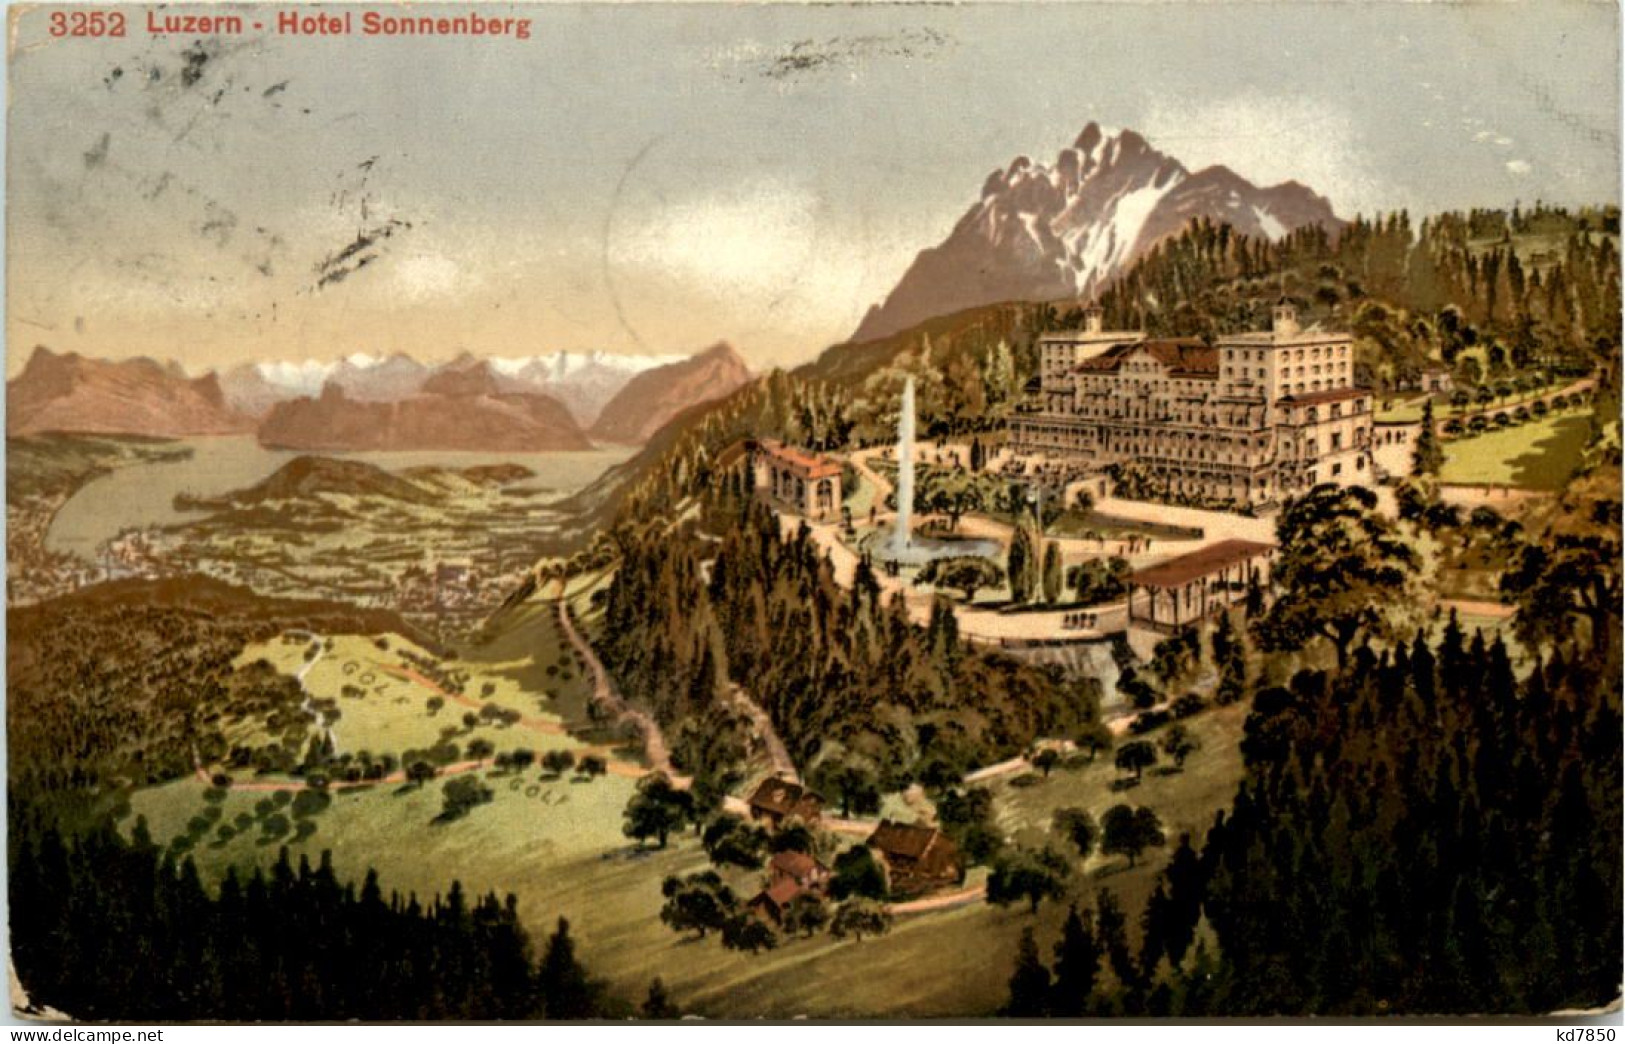 Luzern, Hotel Sonnenberg - Lucerna